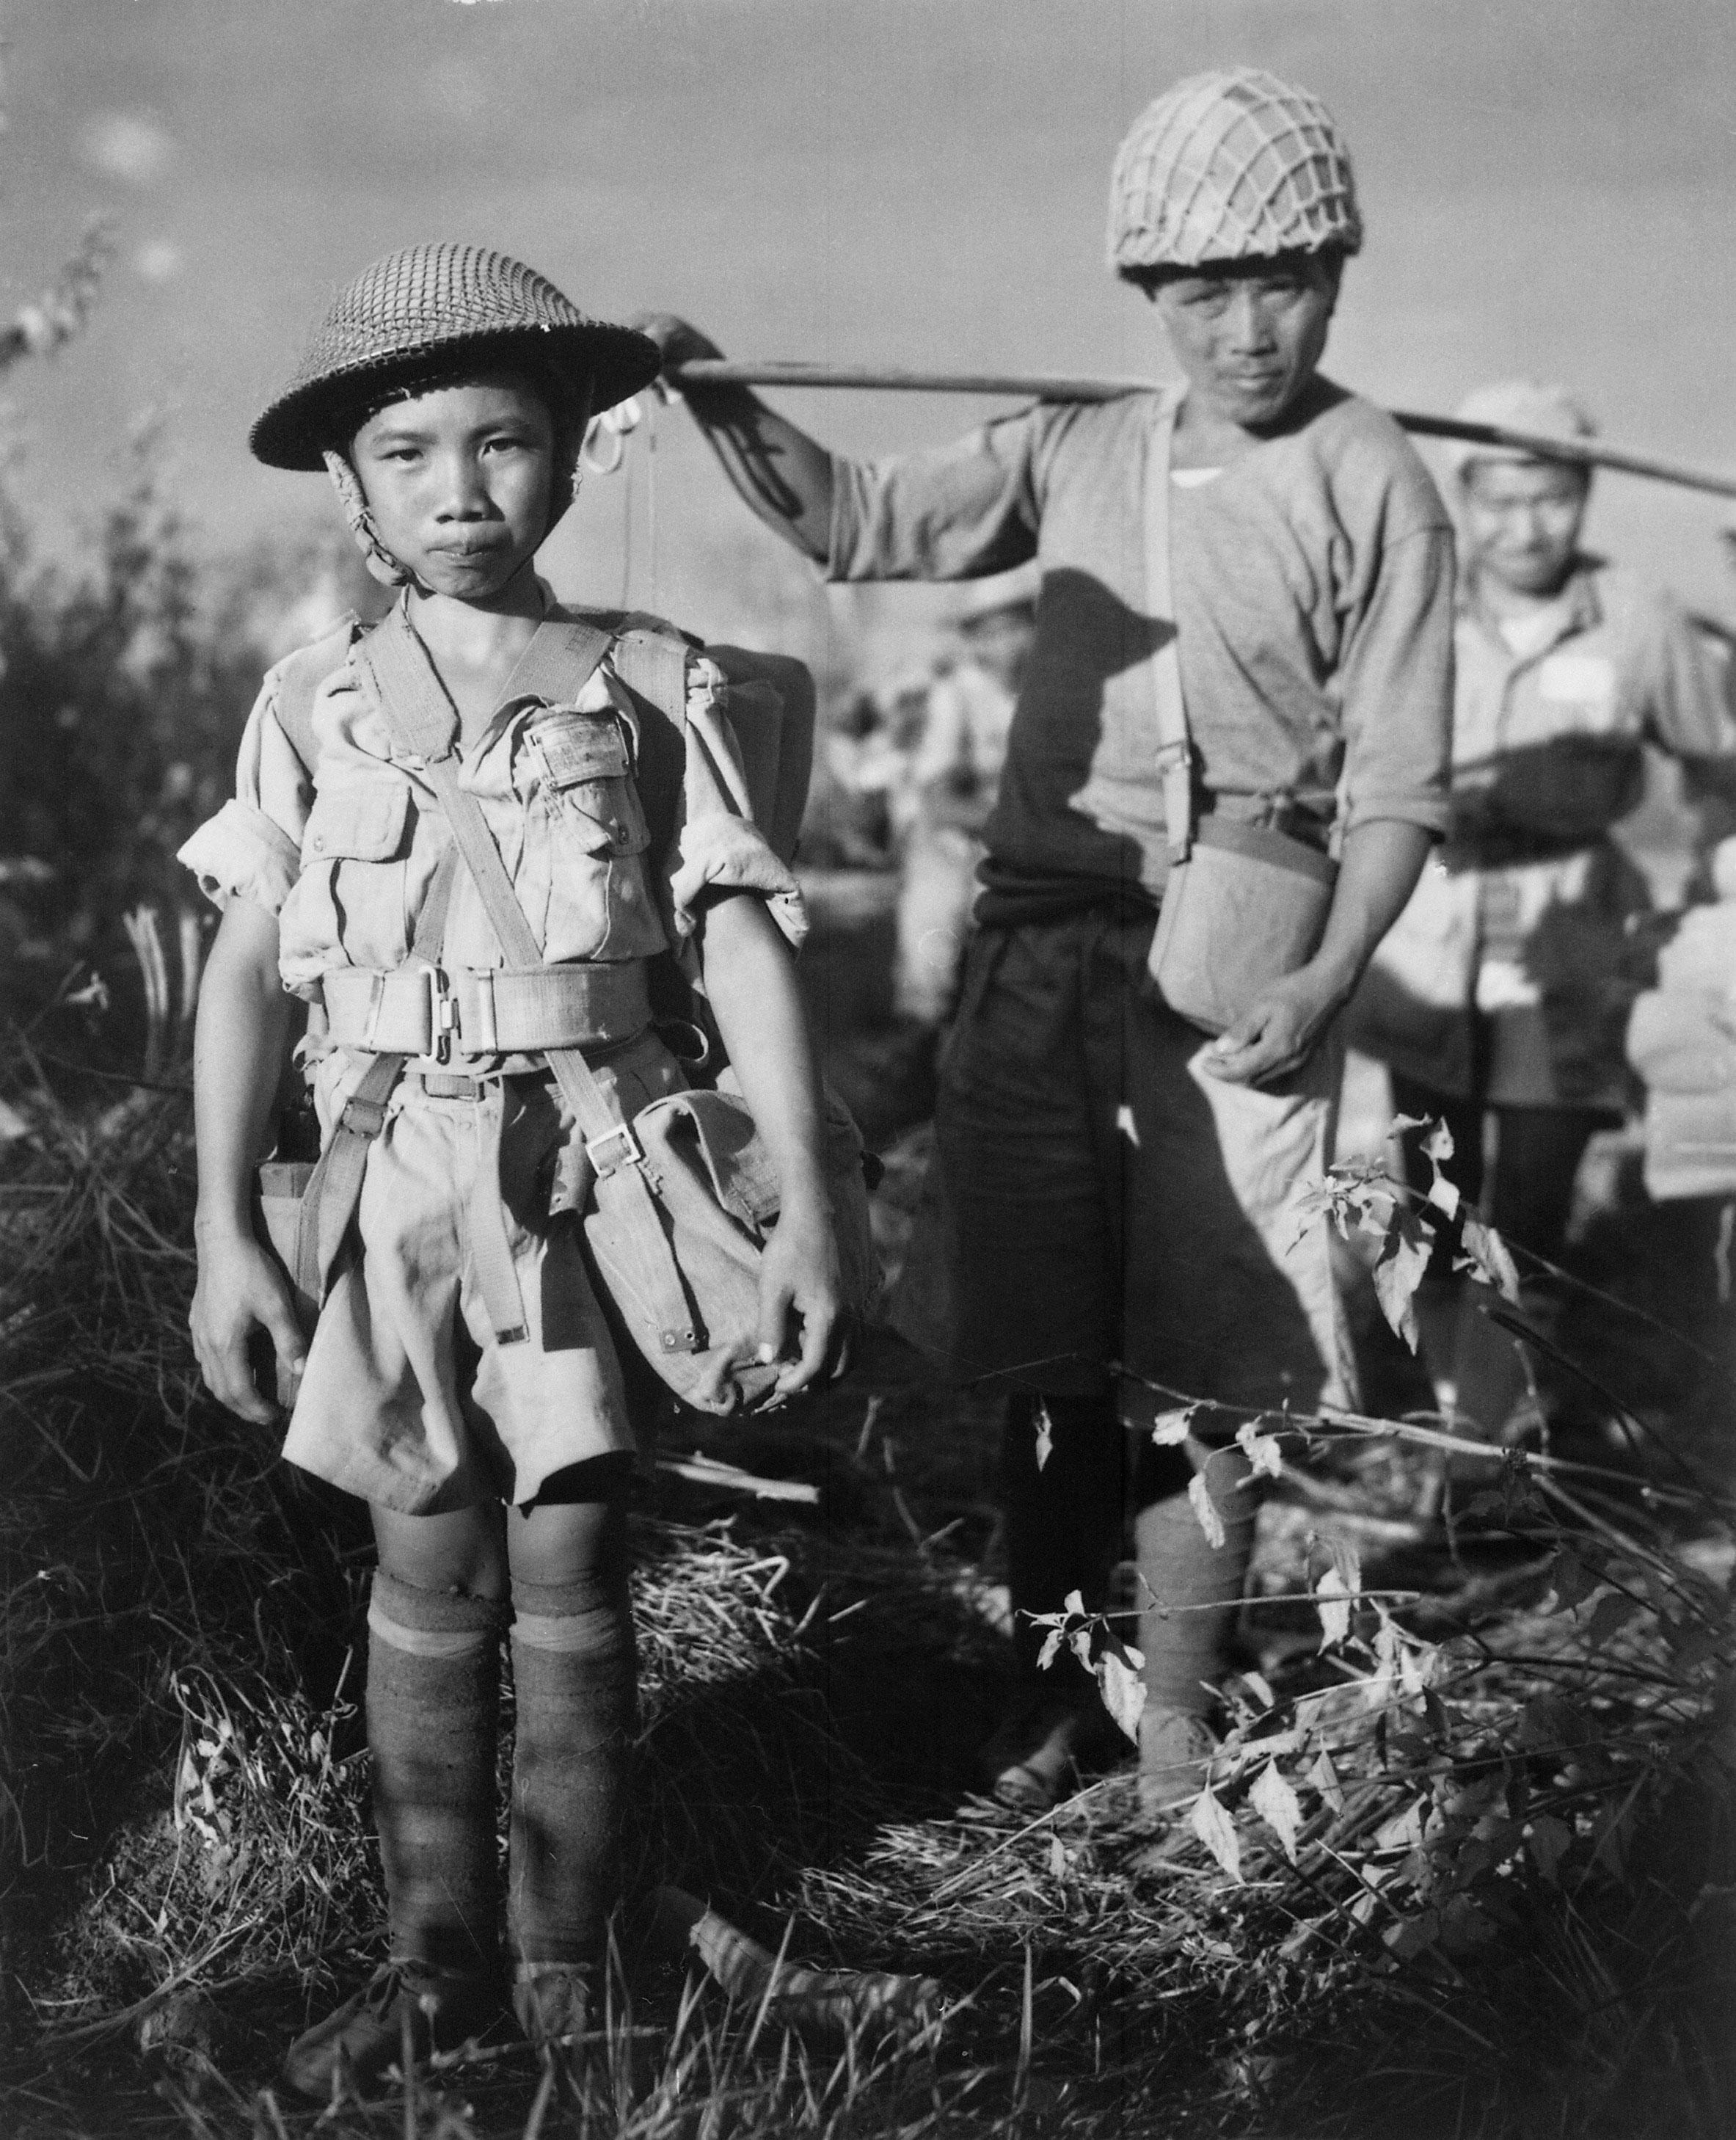 Photo no children in the war